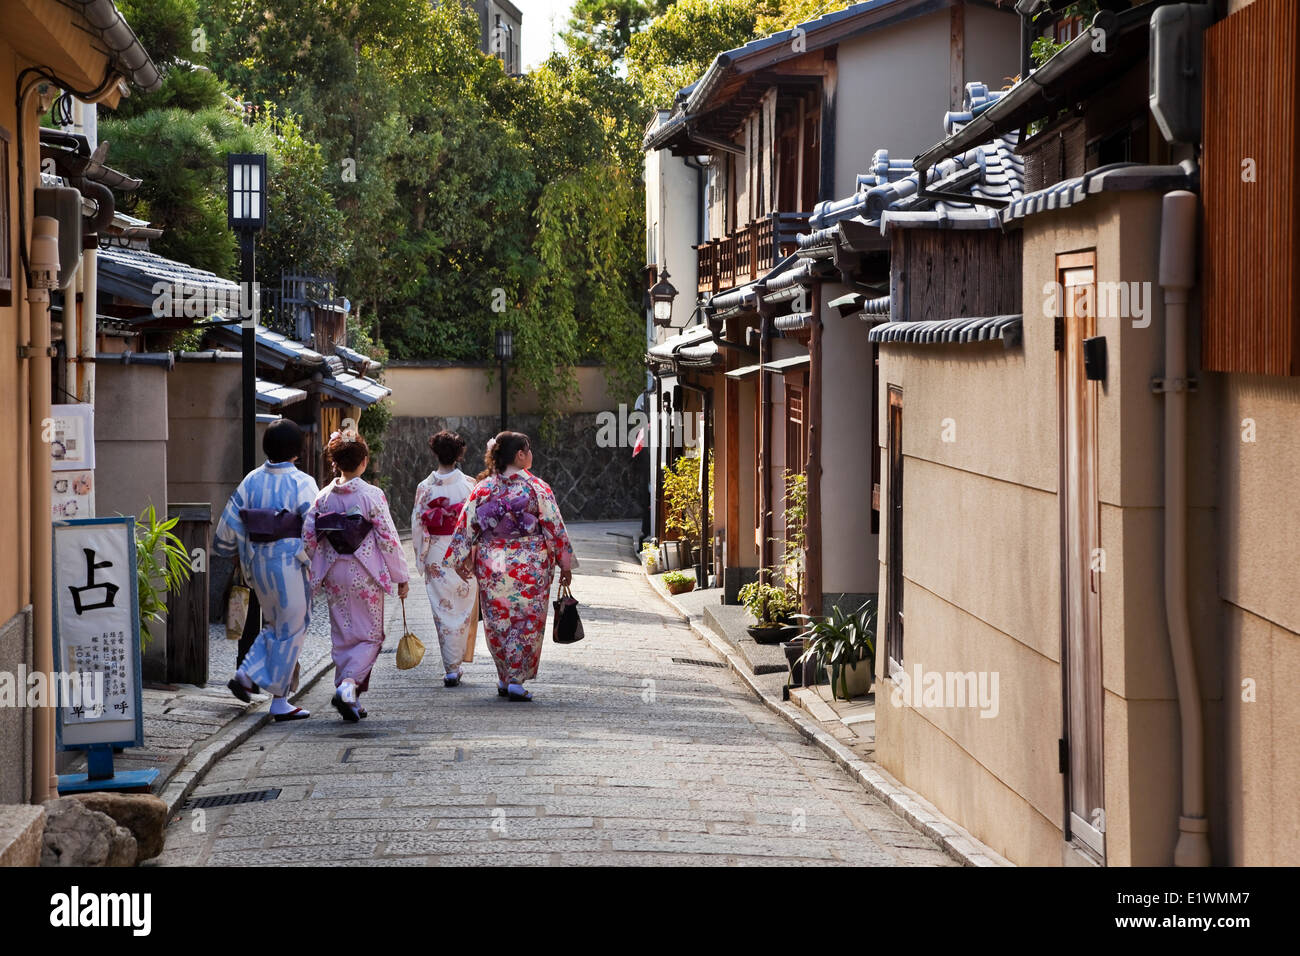 Four Japanese women strolling down a lane wearing yukatas, Higashiyama district of Kyoto, Japan Stock Photo